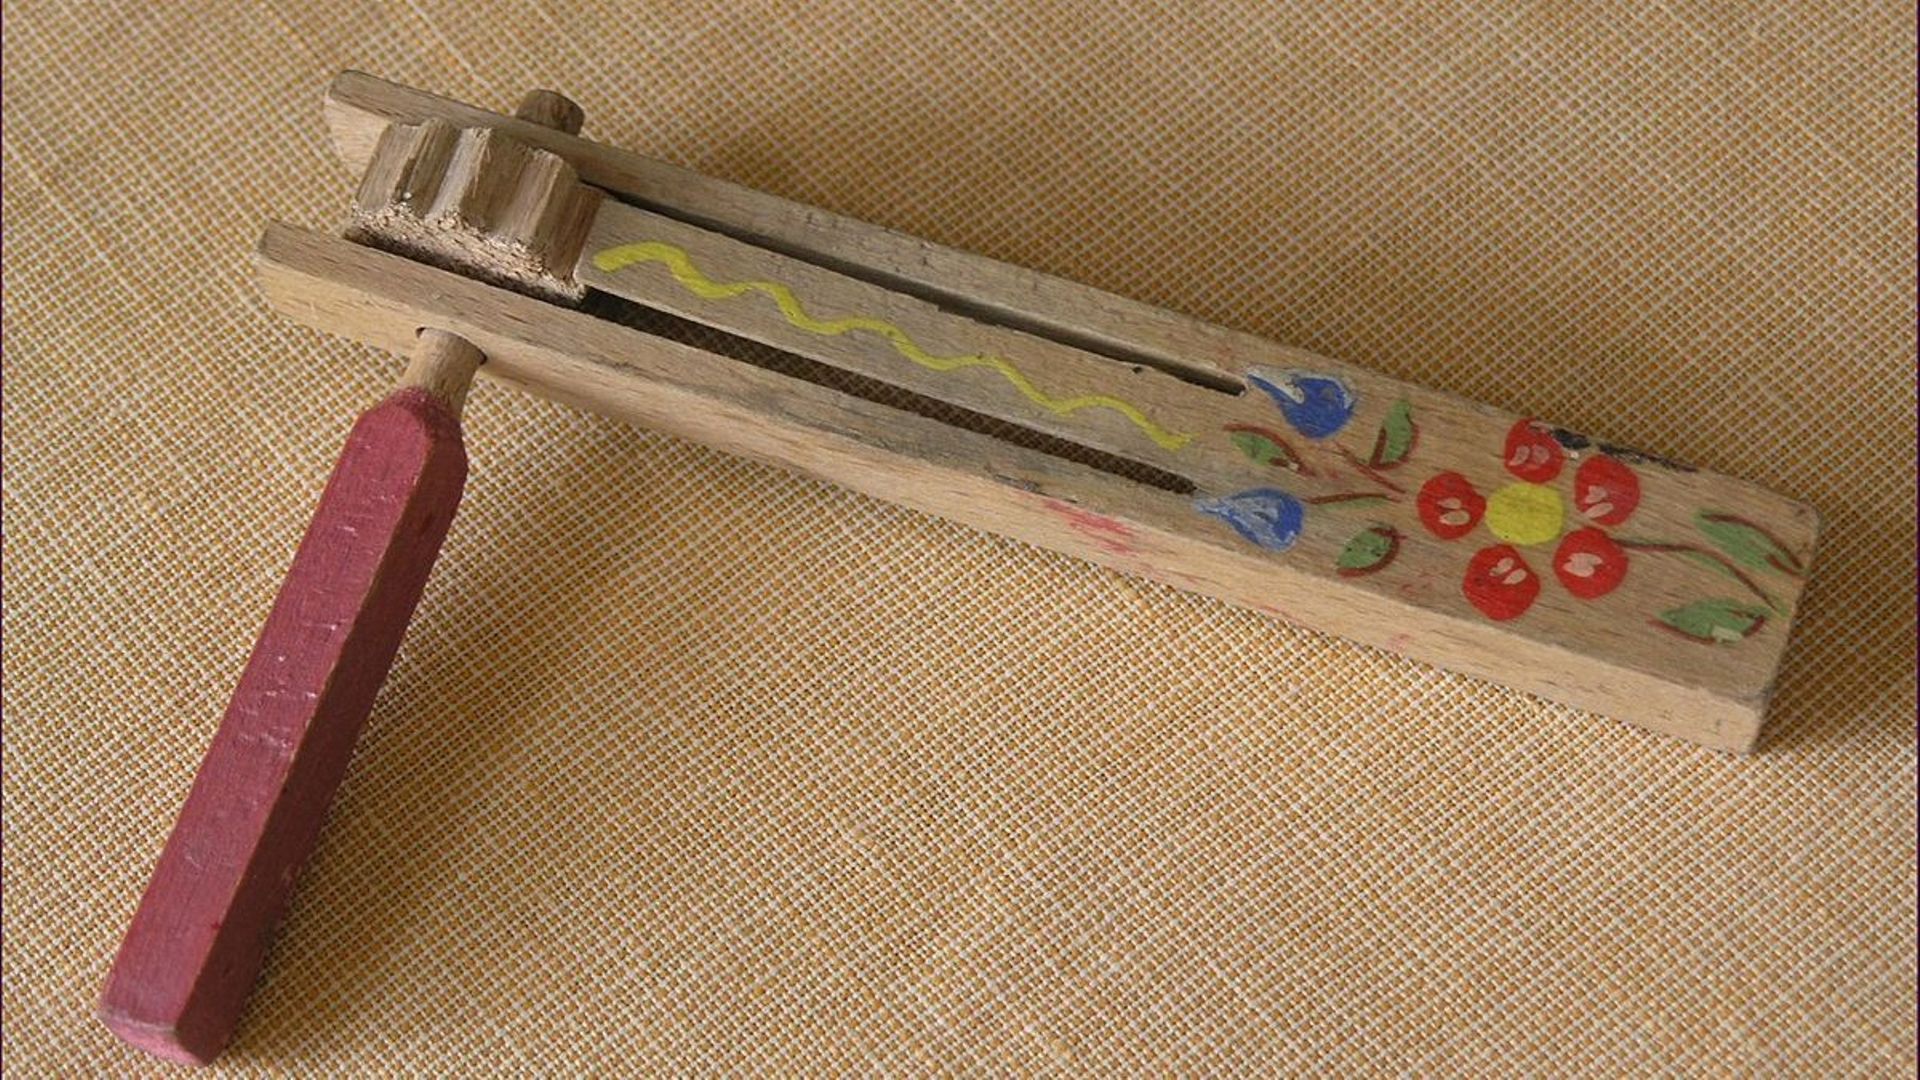 Connaissez-vous la crécelle ? Ce petit instrument en bois apprécié des enfants et qui a son rôle au moment de Pâques